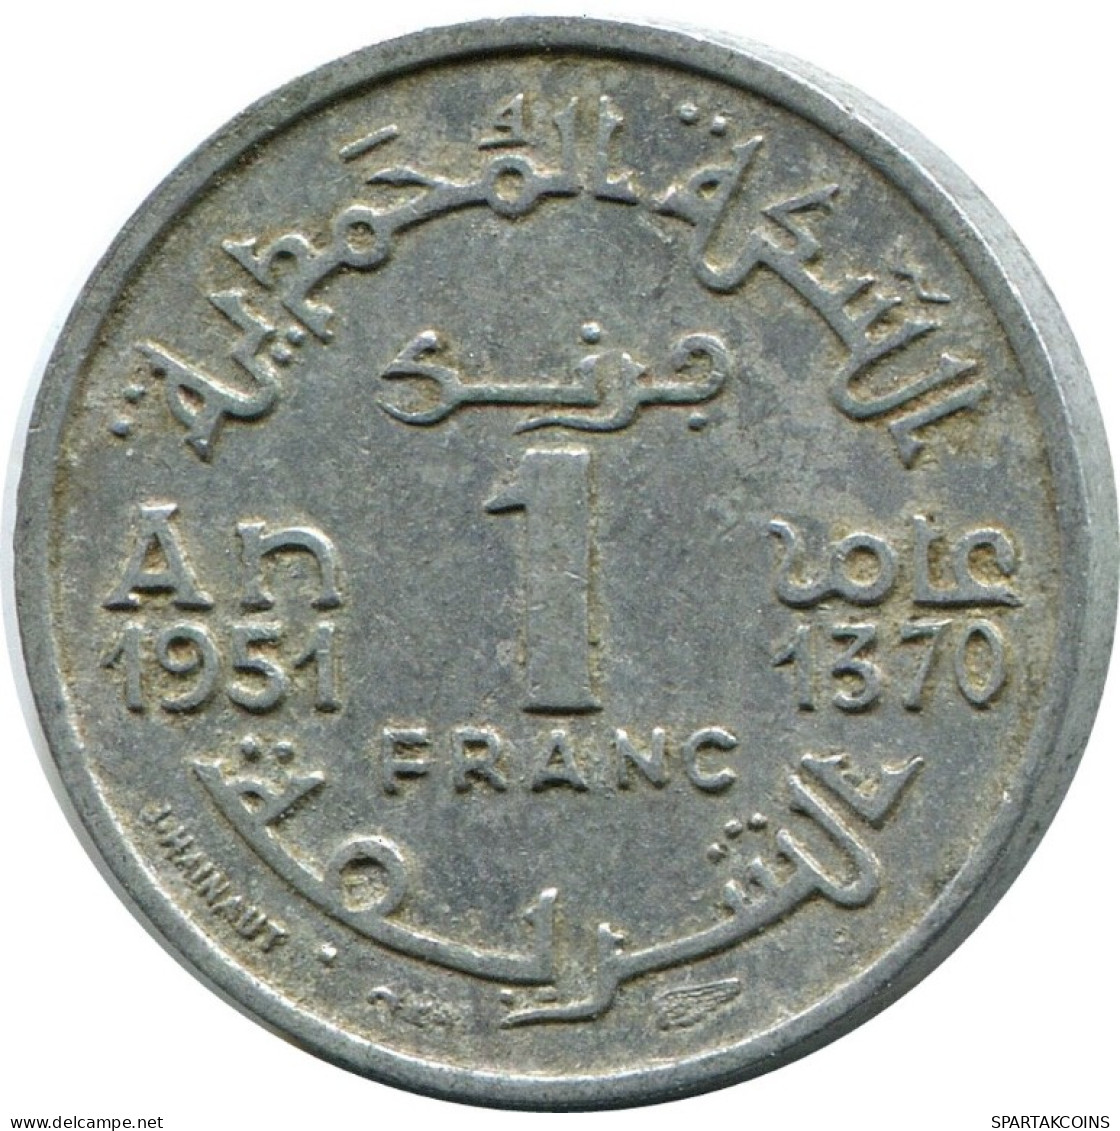 1 FRANC 1951 MARRUECOS MOROCCO Islámico Moneda #AH697.3.E.A - Marruecos